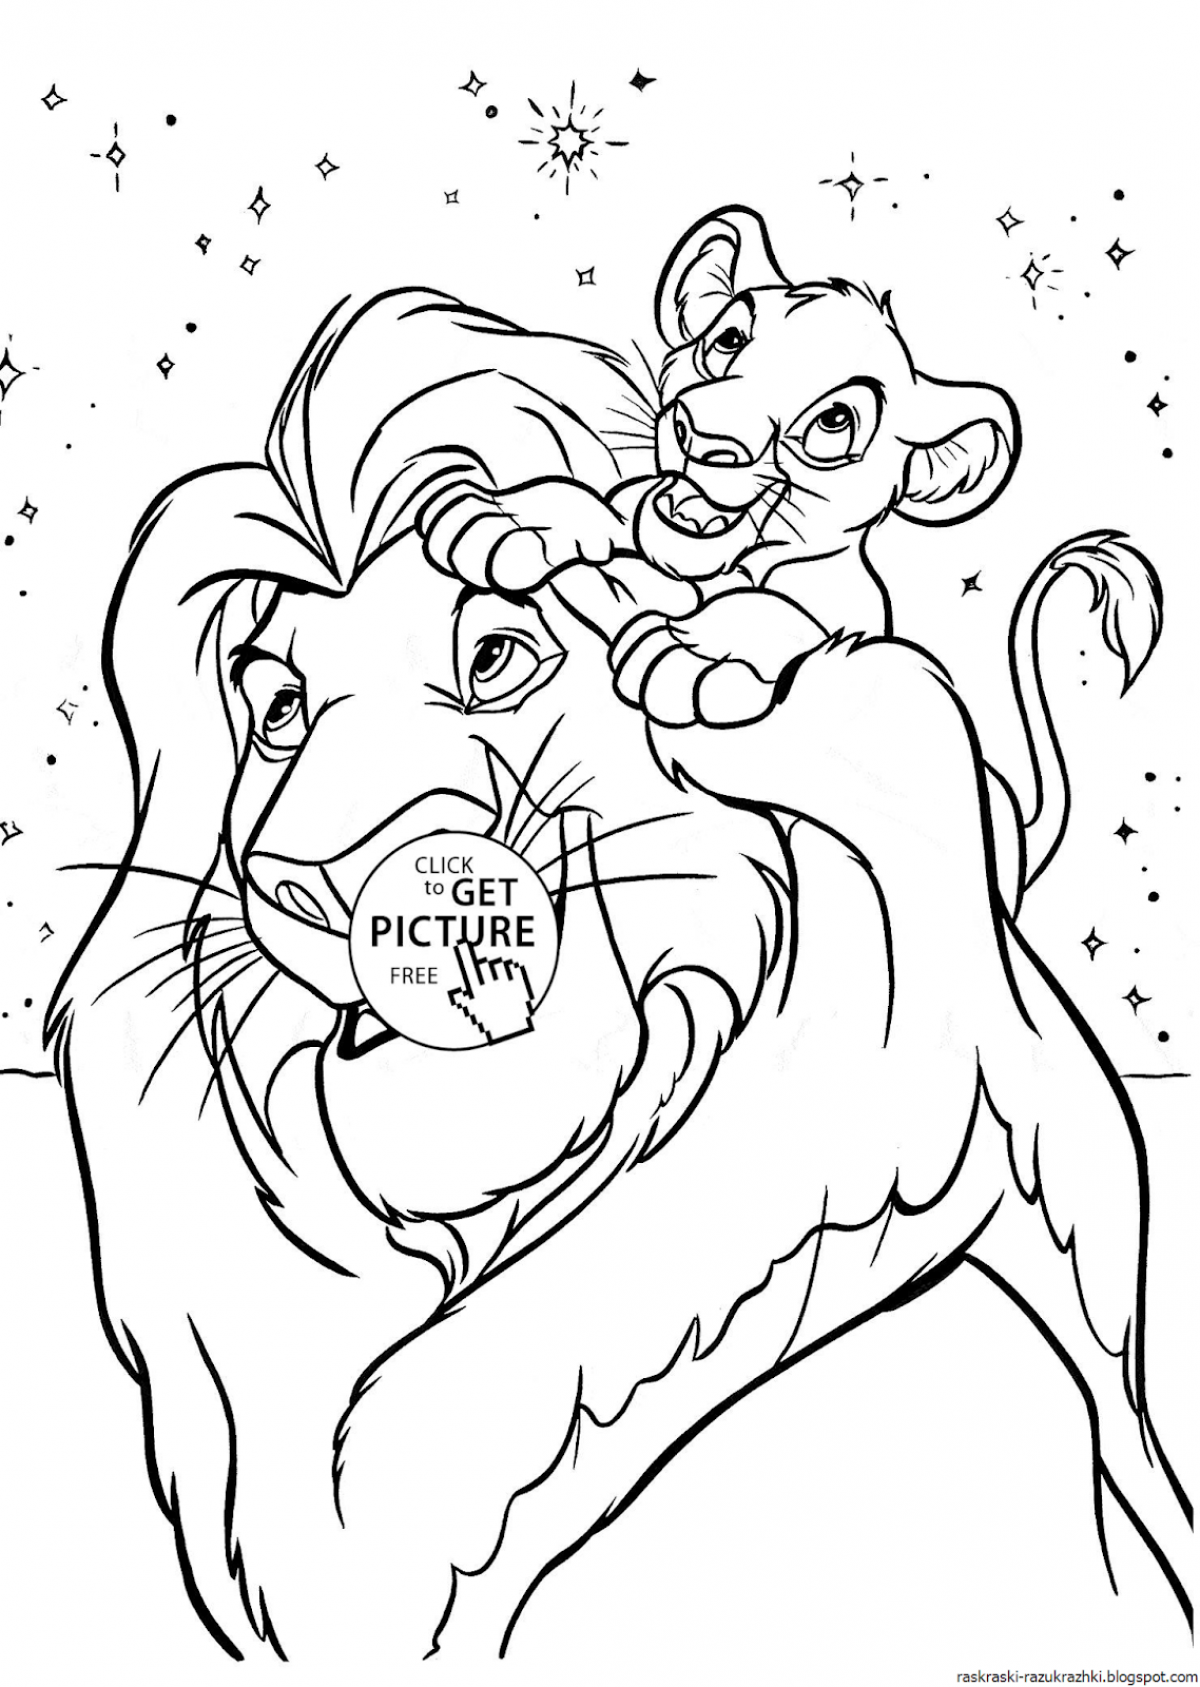 Причудливая раскраска король лев для детей